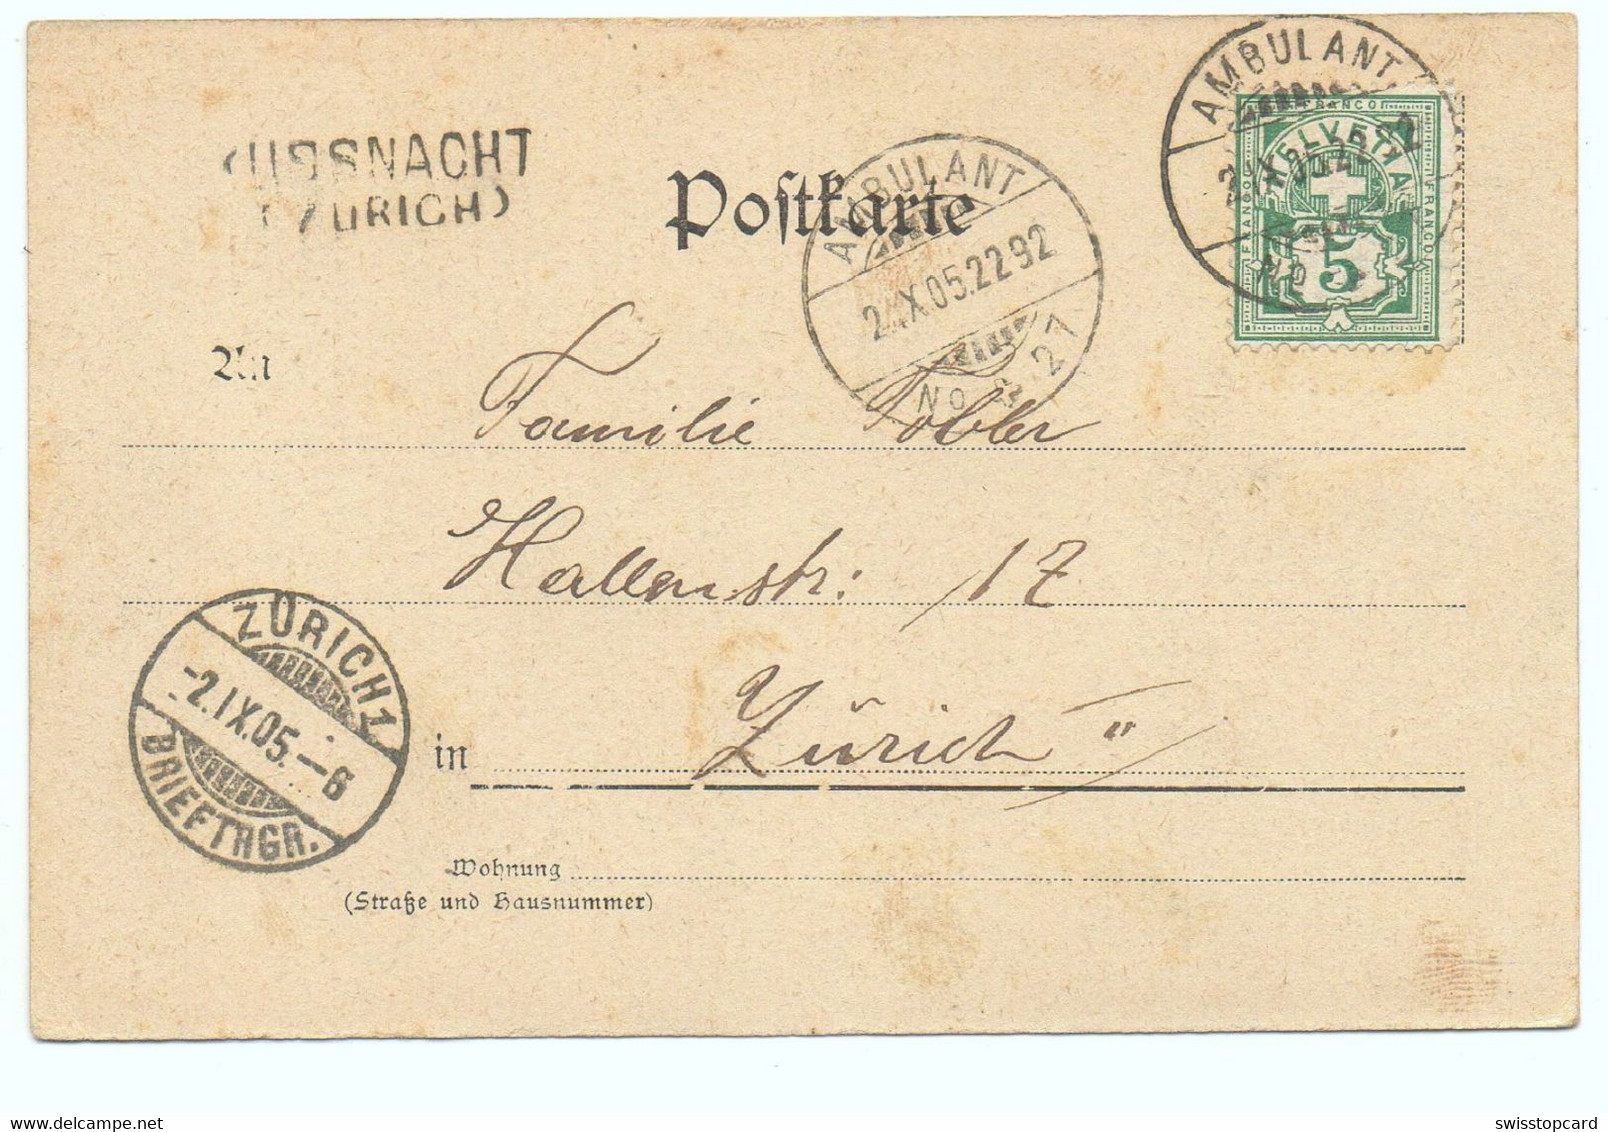 Gruss Aus KÜSNACHT Kantonales Lehrerseminar Gel. 1905 Ambulant N. Zürich Spez. Stempel - Küsnacht